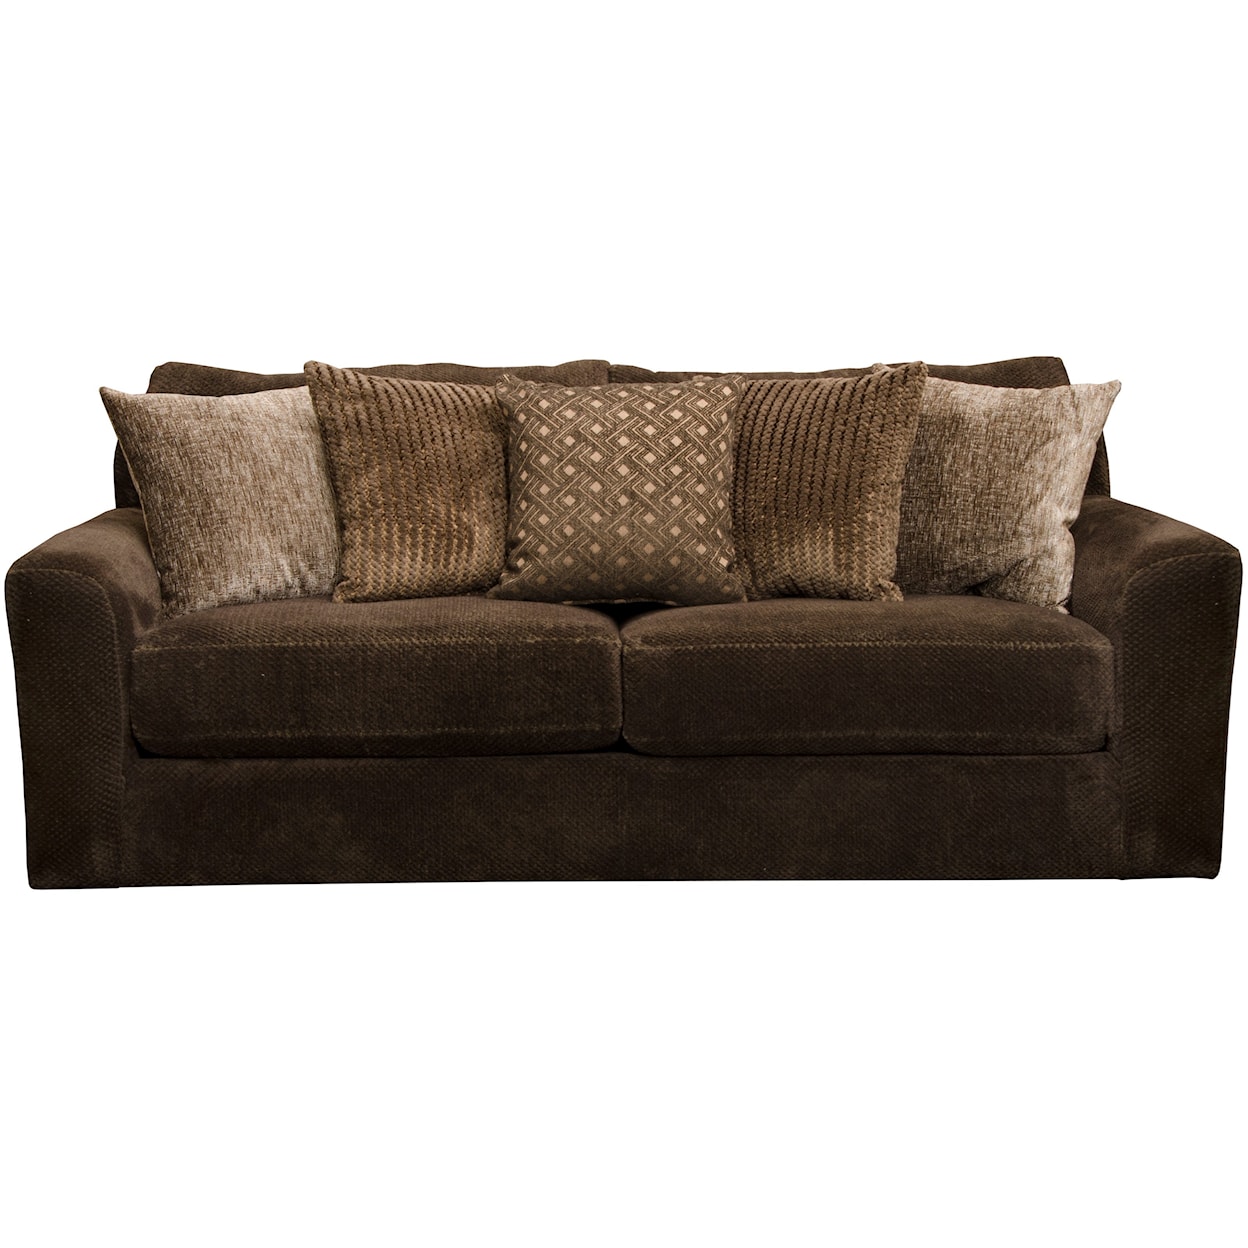 Jackson Furniture 3291 Midwood Sofa